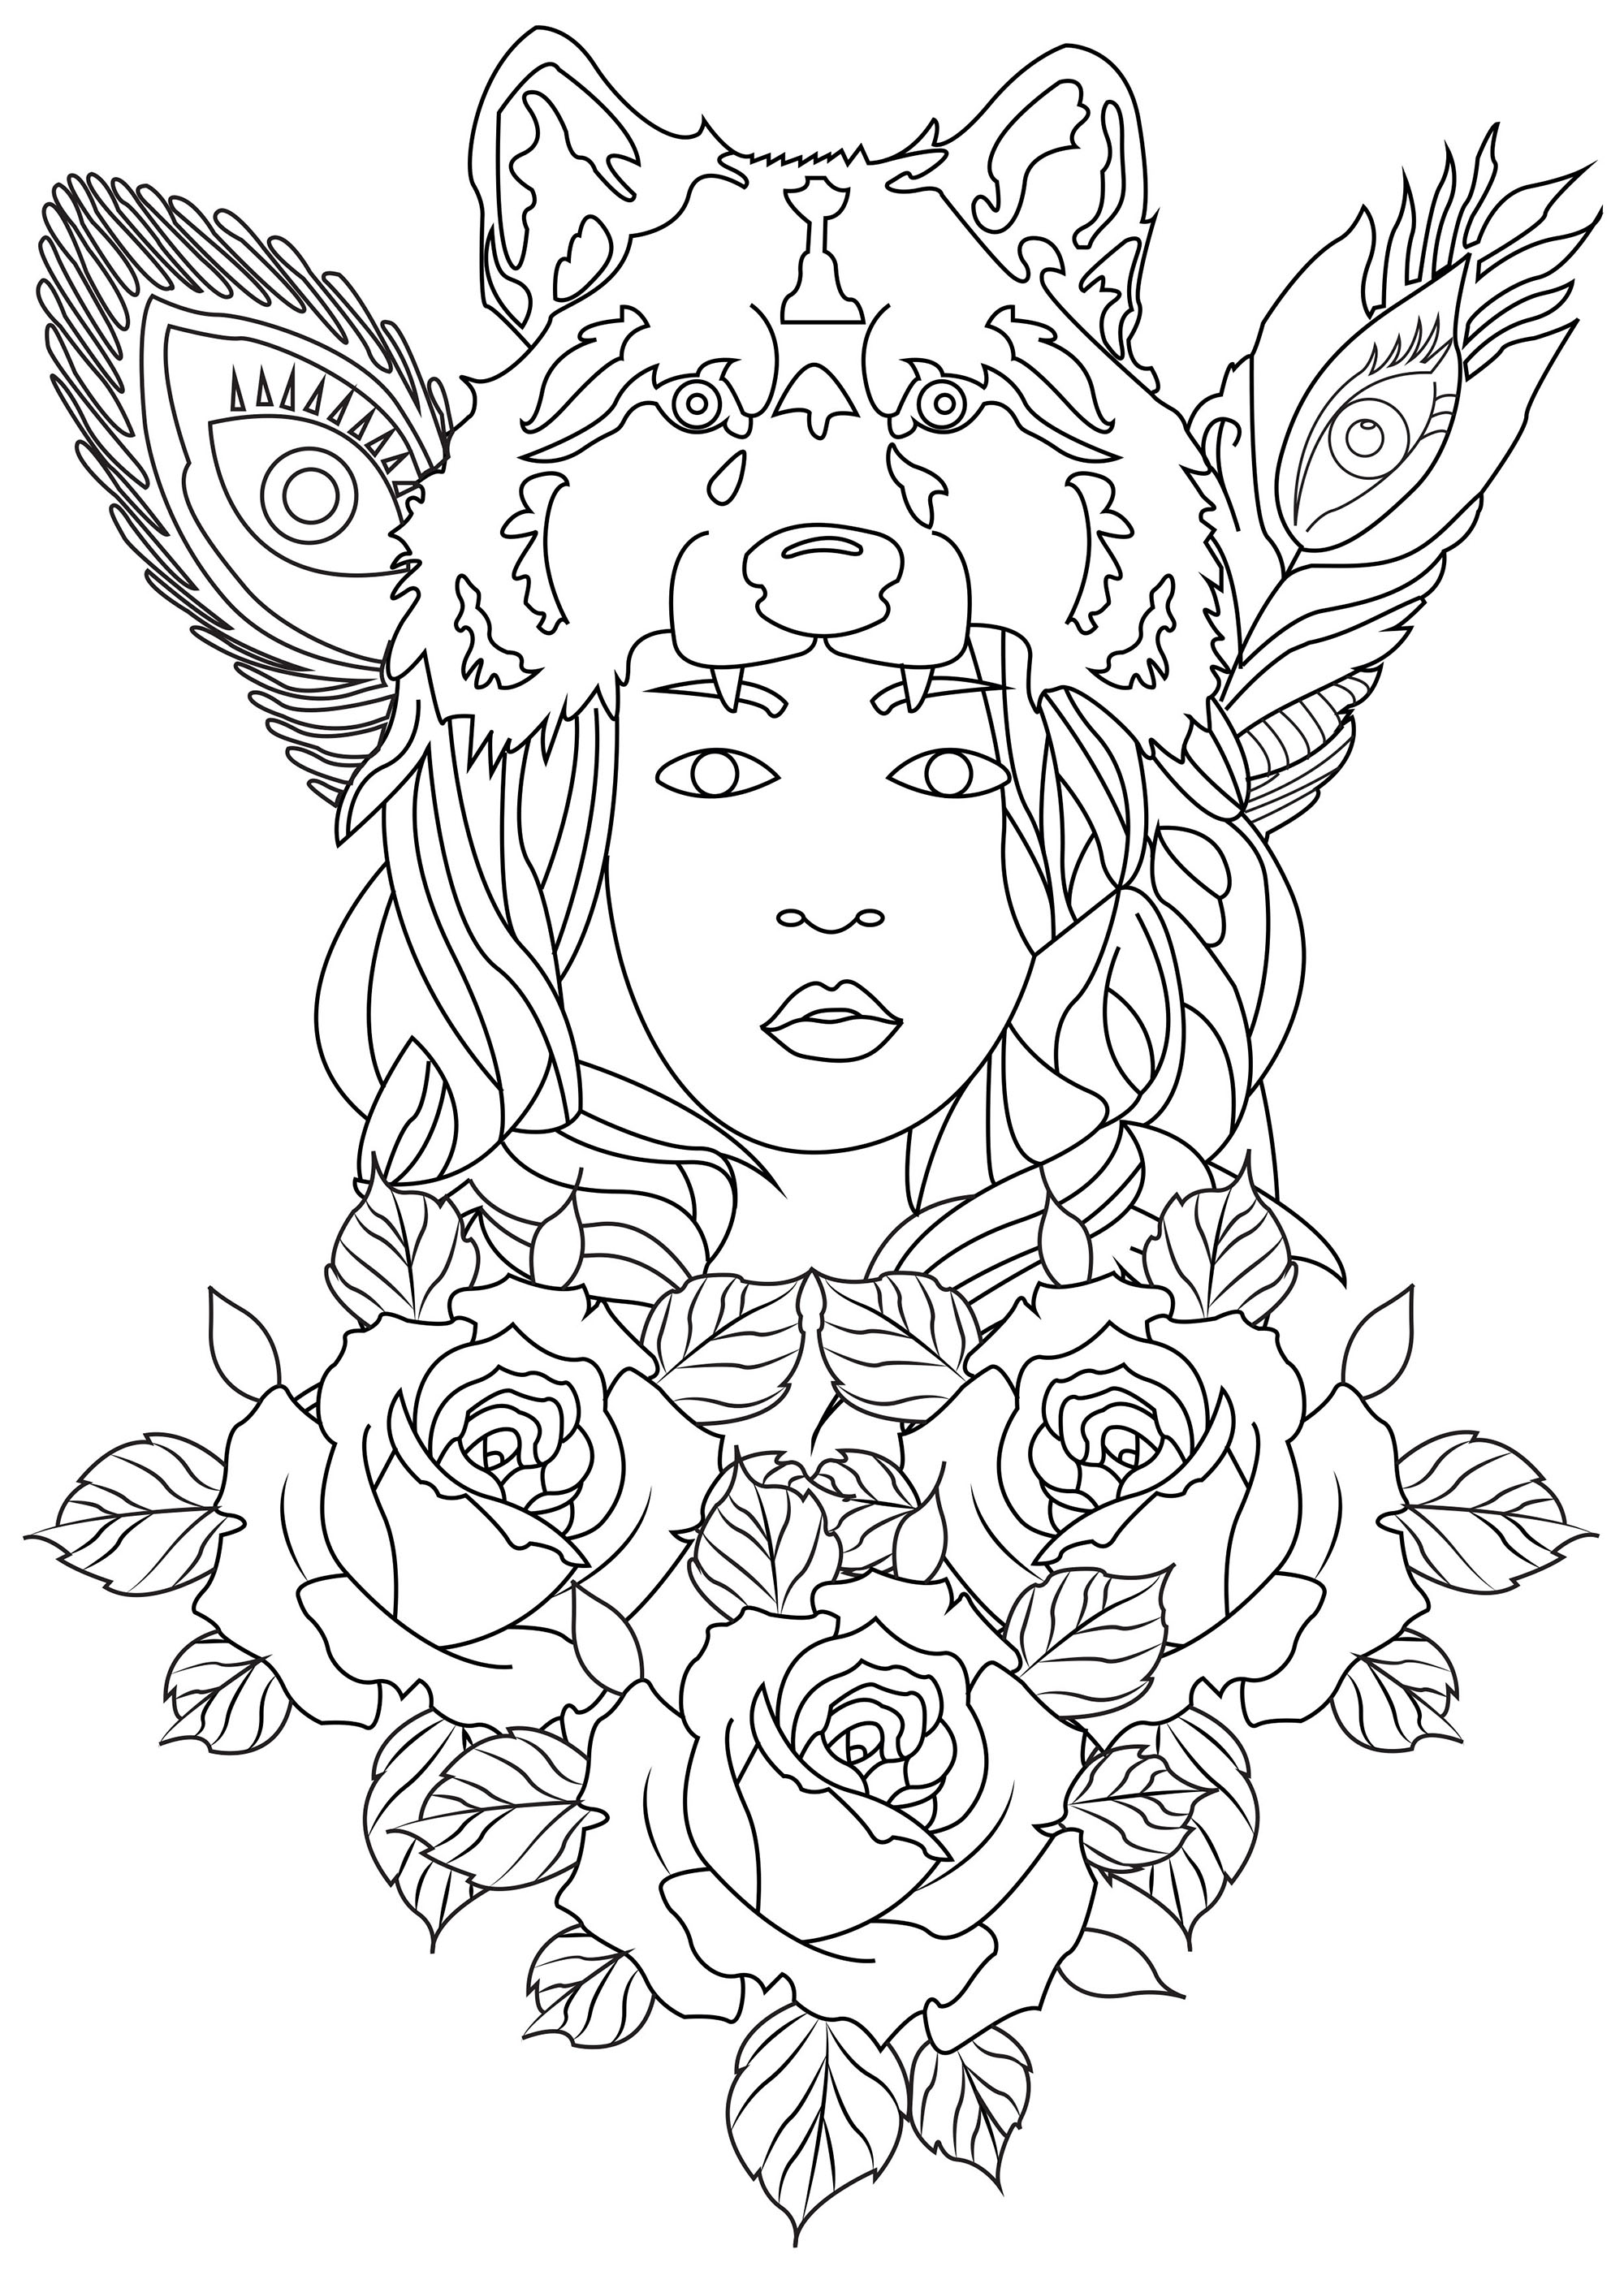 Male diese 'Wolfsfrau' und all die Rosen und Federn, die sie umgeben, aus, Künstler : Caillou